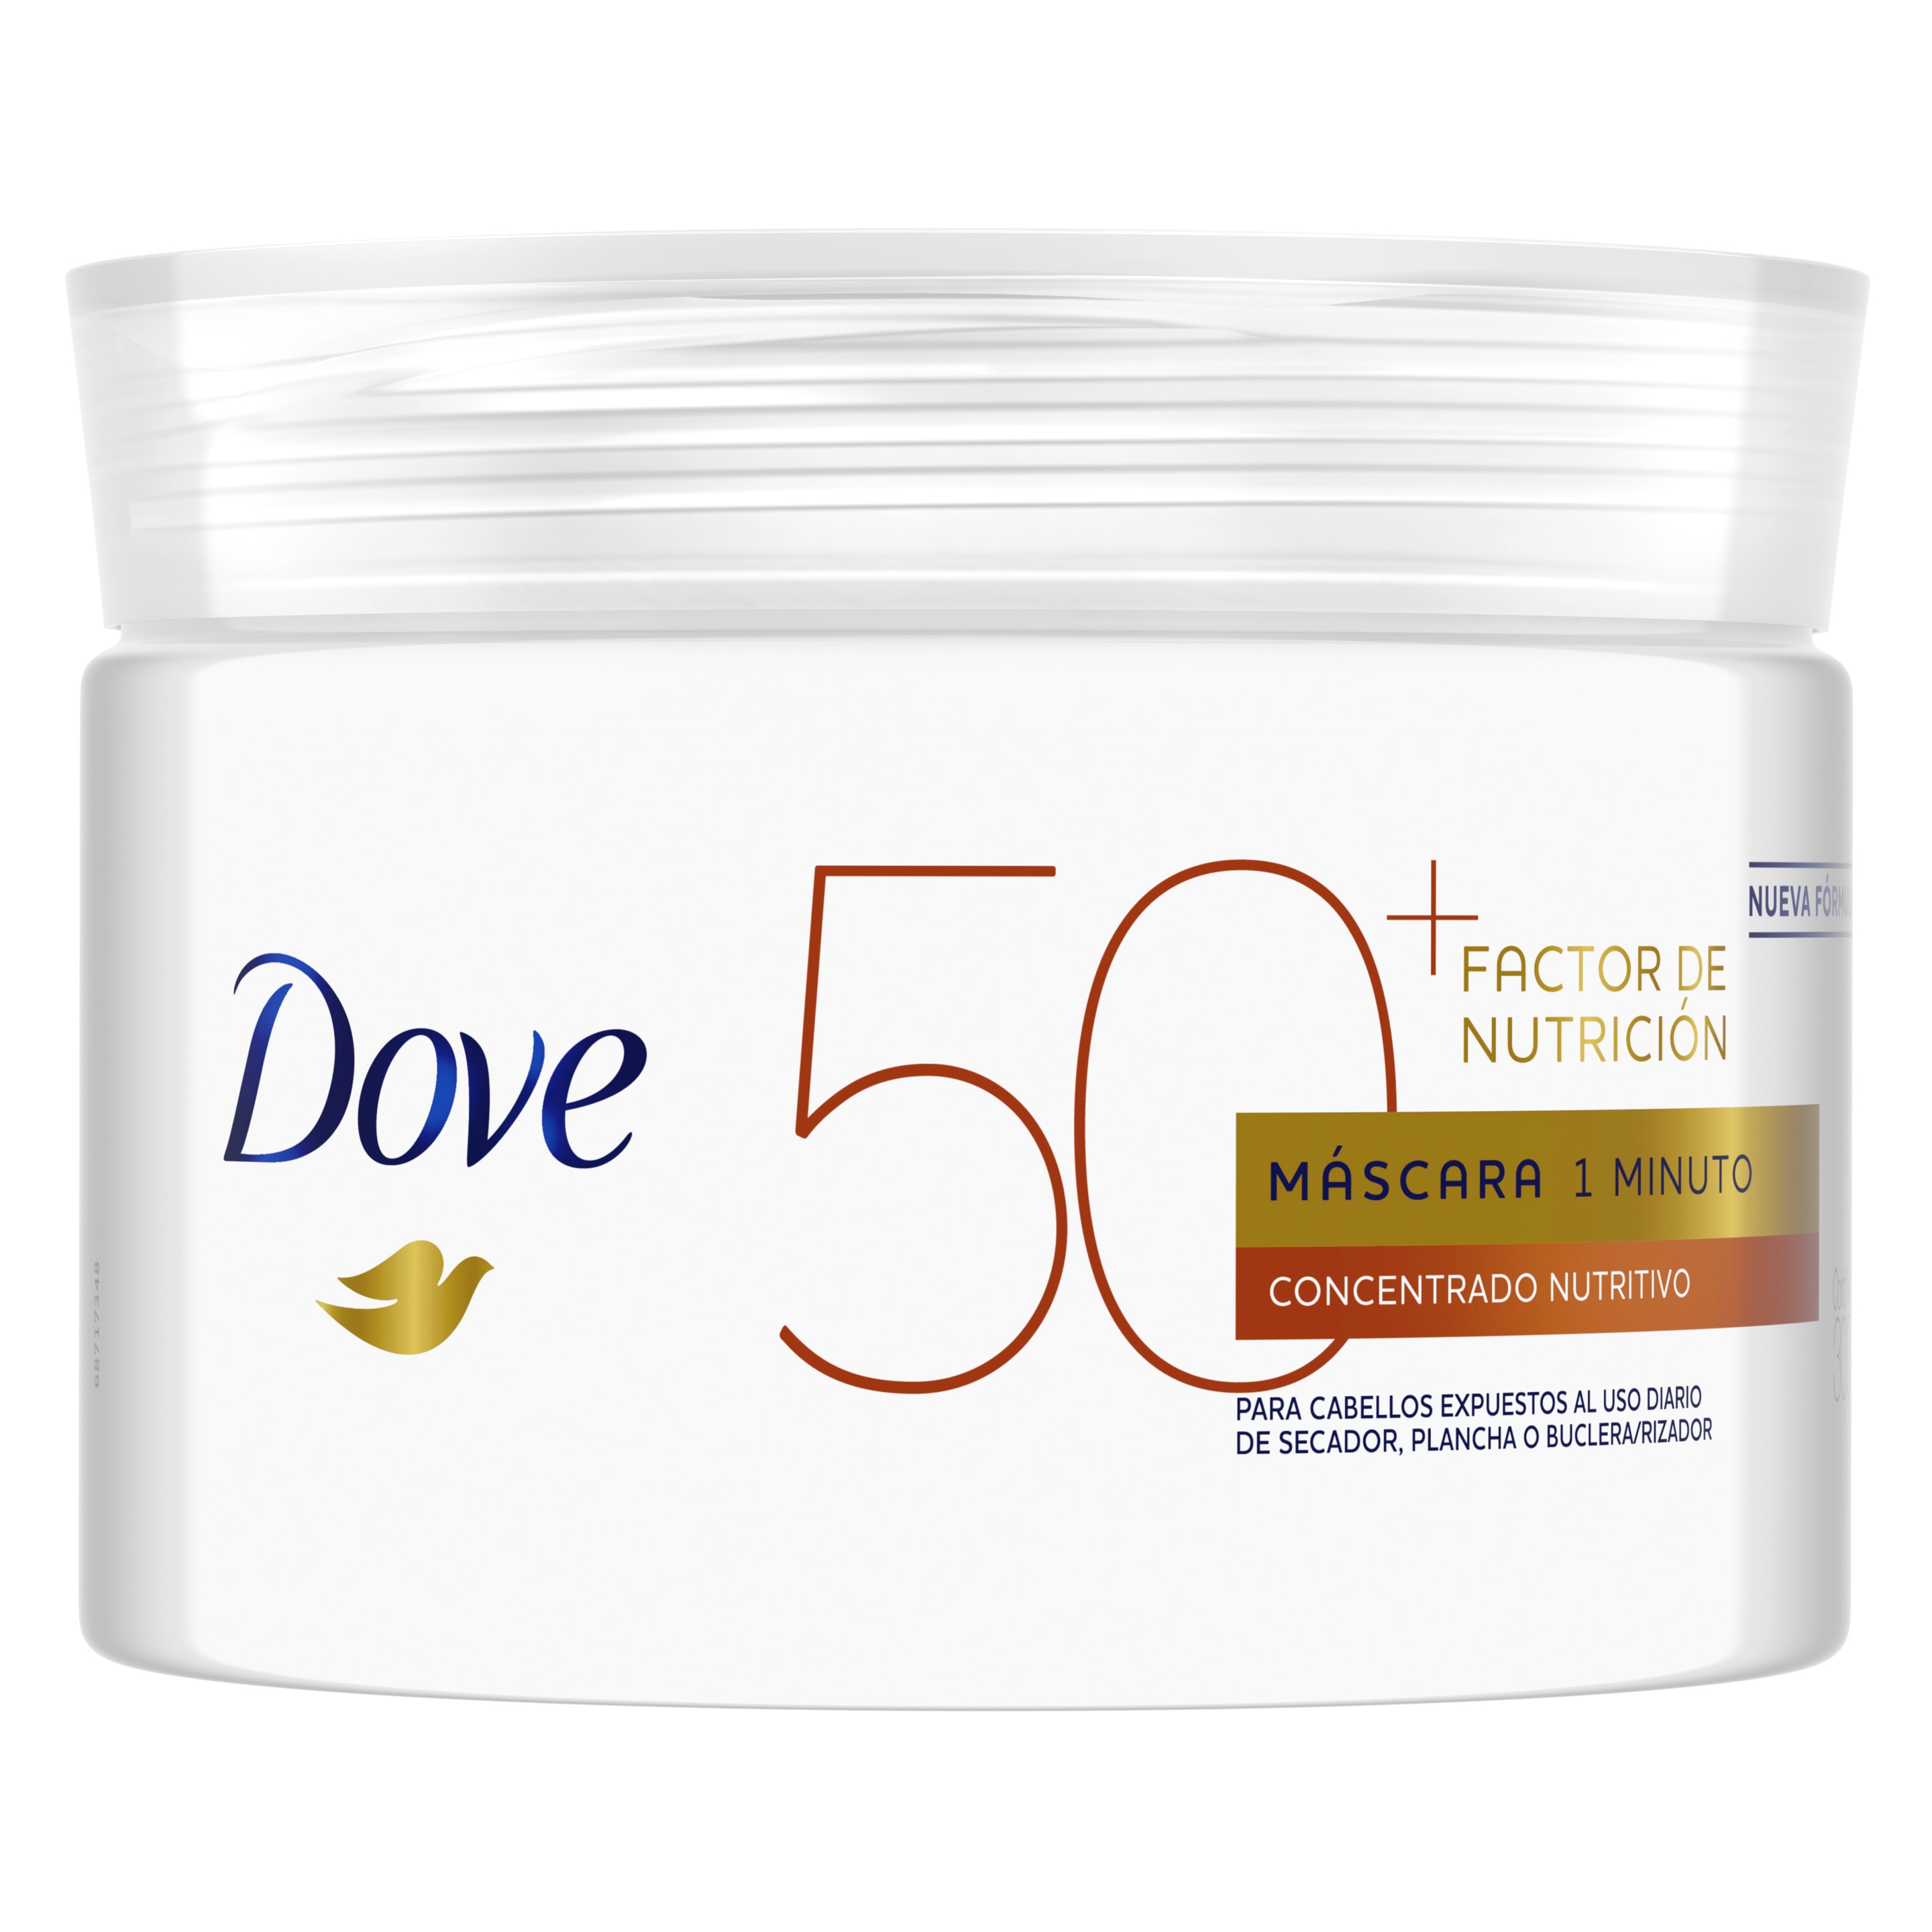 Imagen de envase Dove máscara de tratamiento factor de nutrición 50